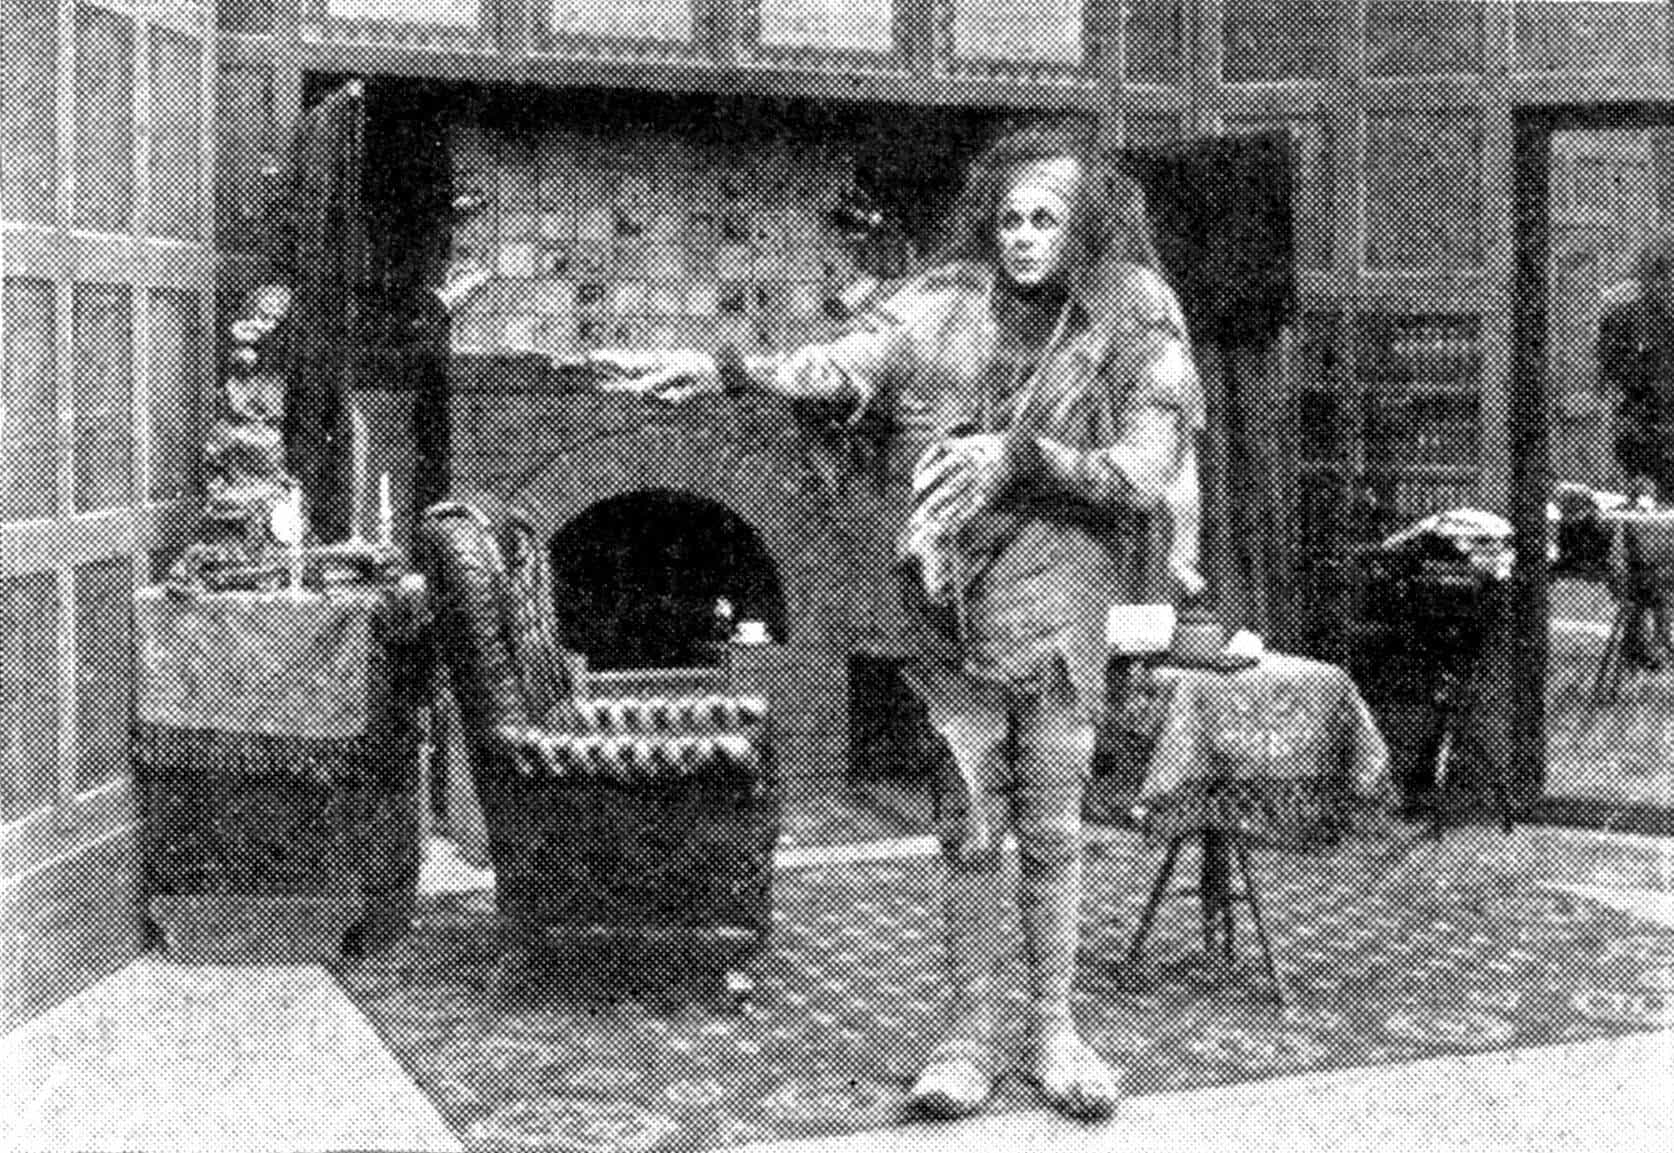 Frankenstein in a 1910 film